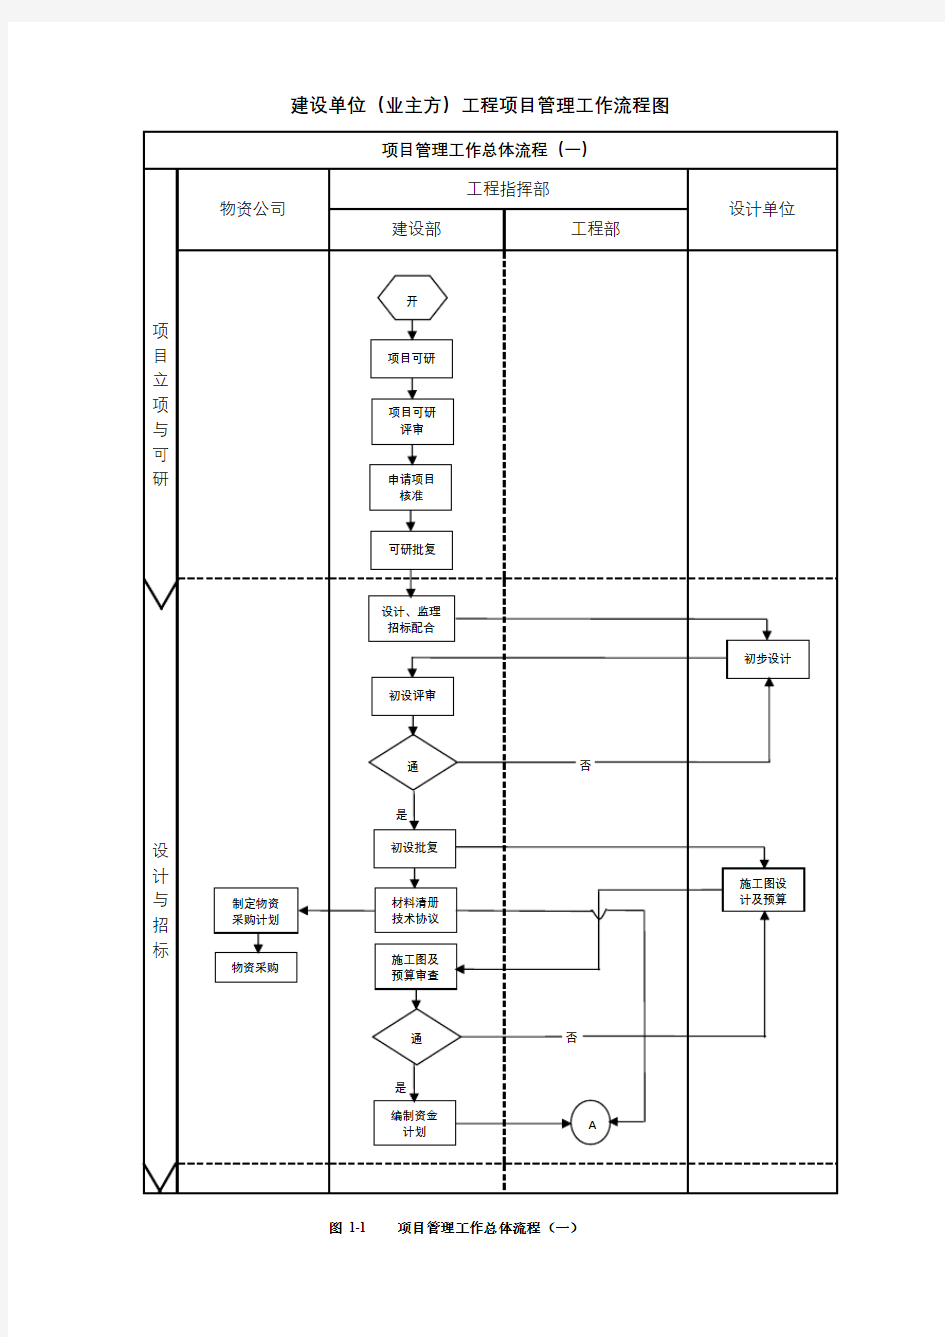 建设单位(业主方)工程项目管理工作流程图(可编辑版)